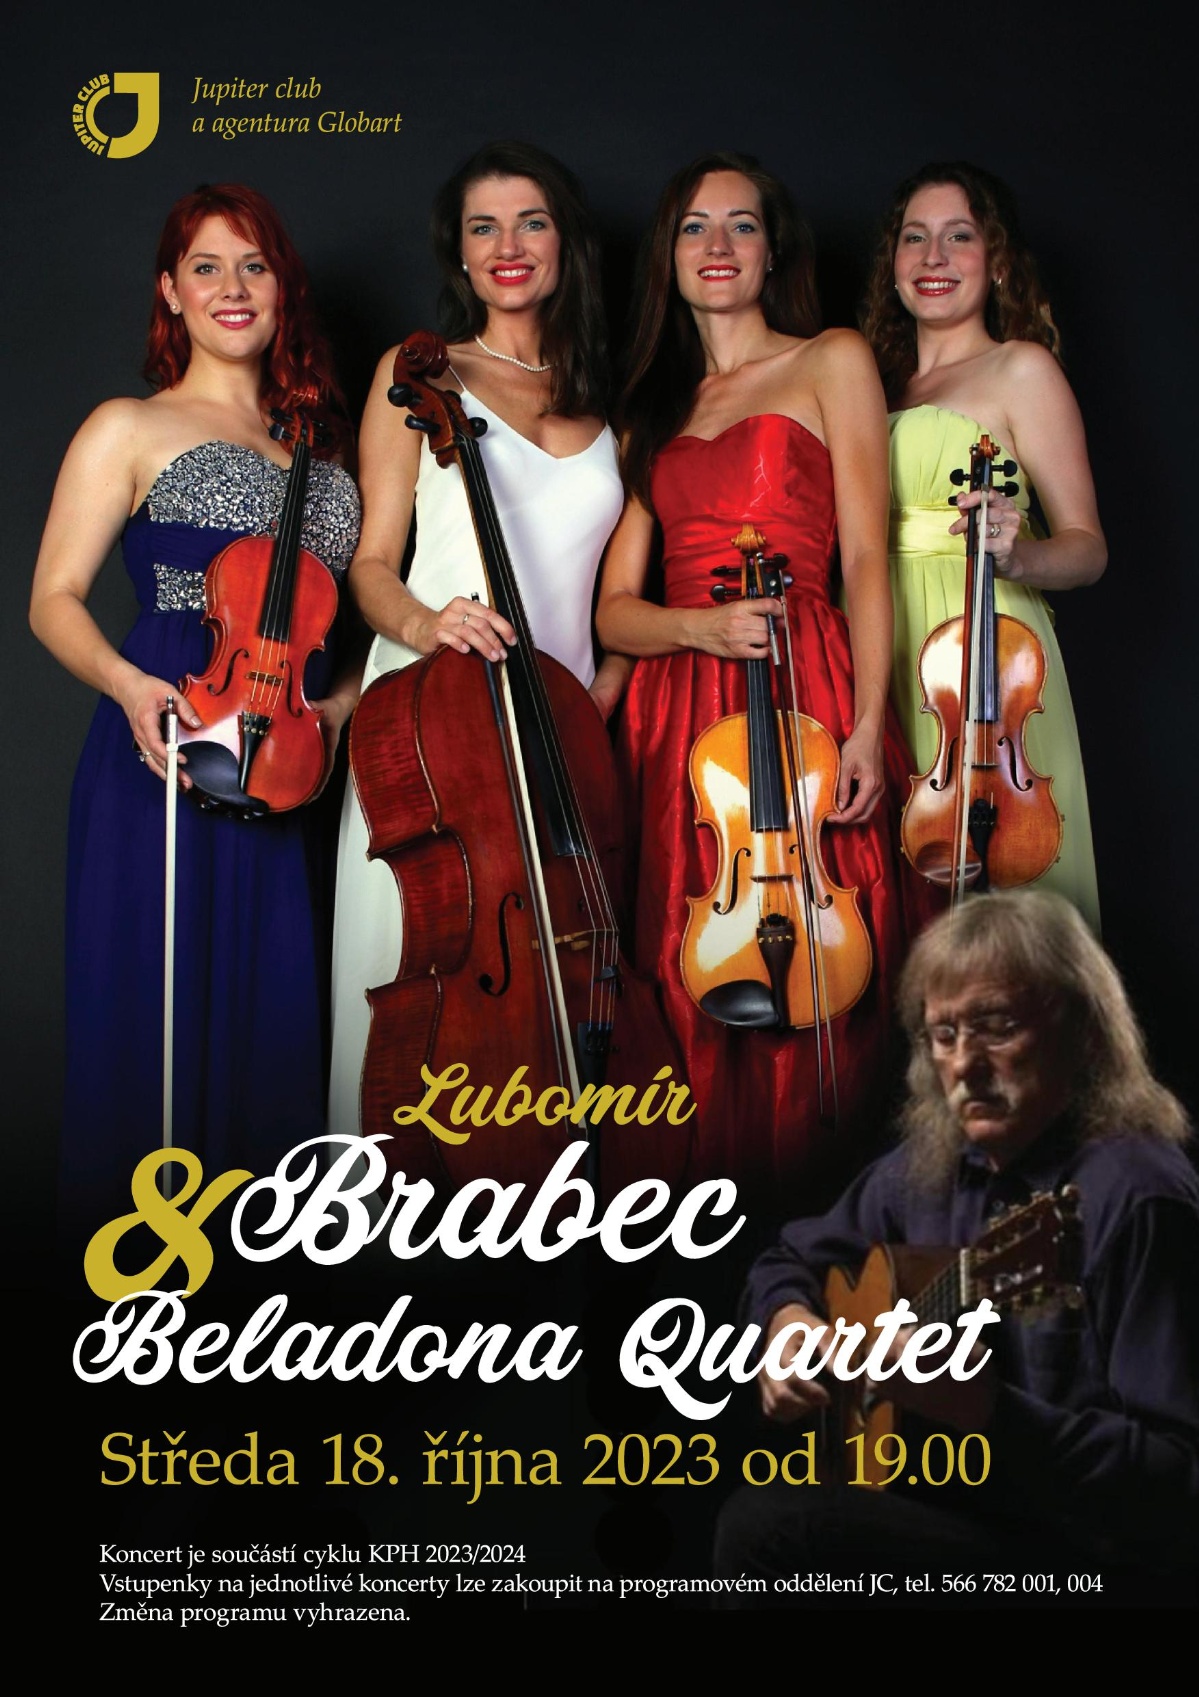 Již příští středu na Beladona Quartet s Lubomírem Brabcem